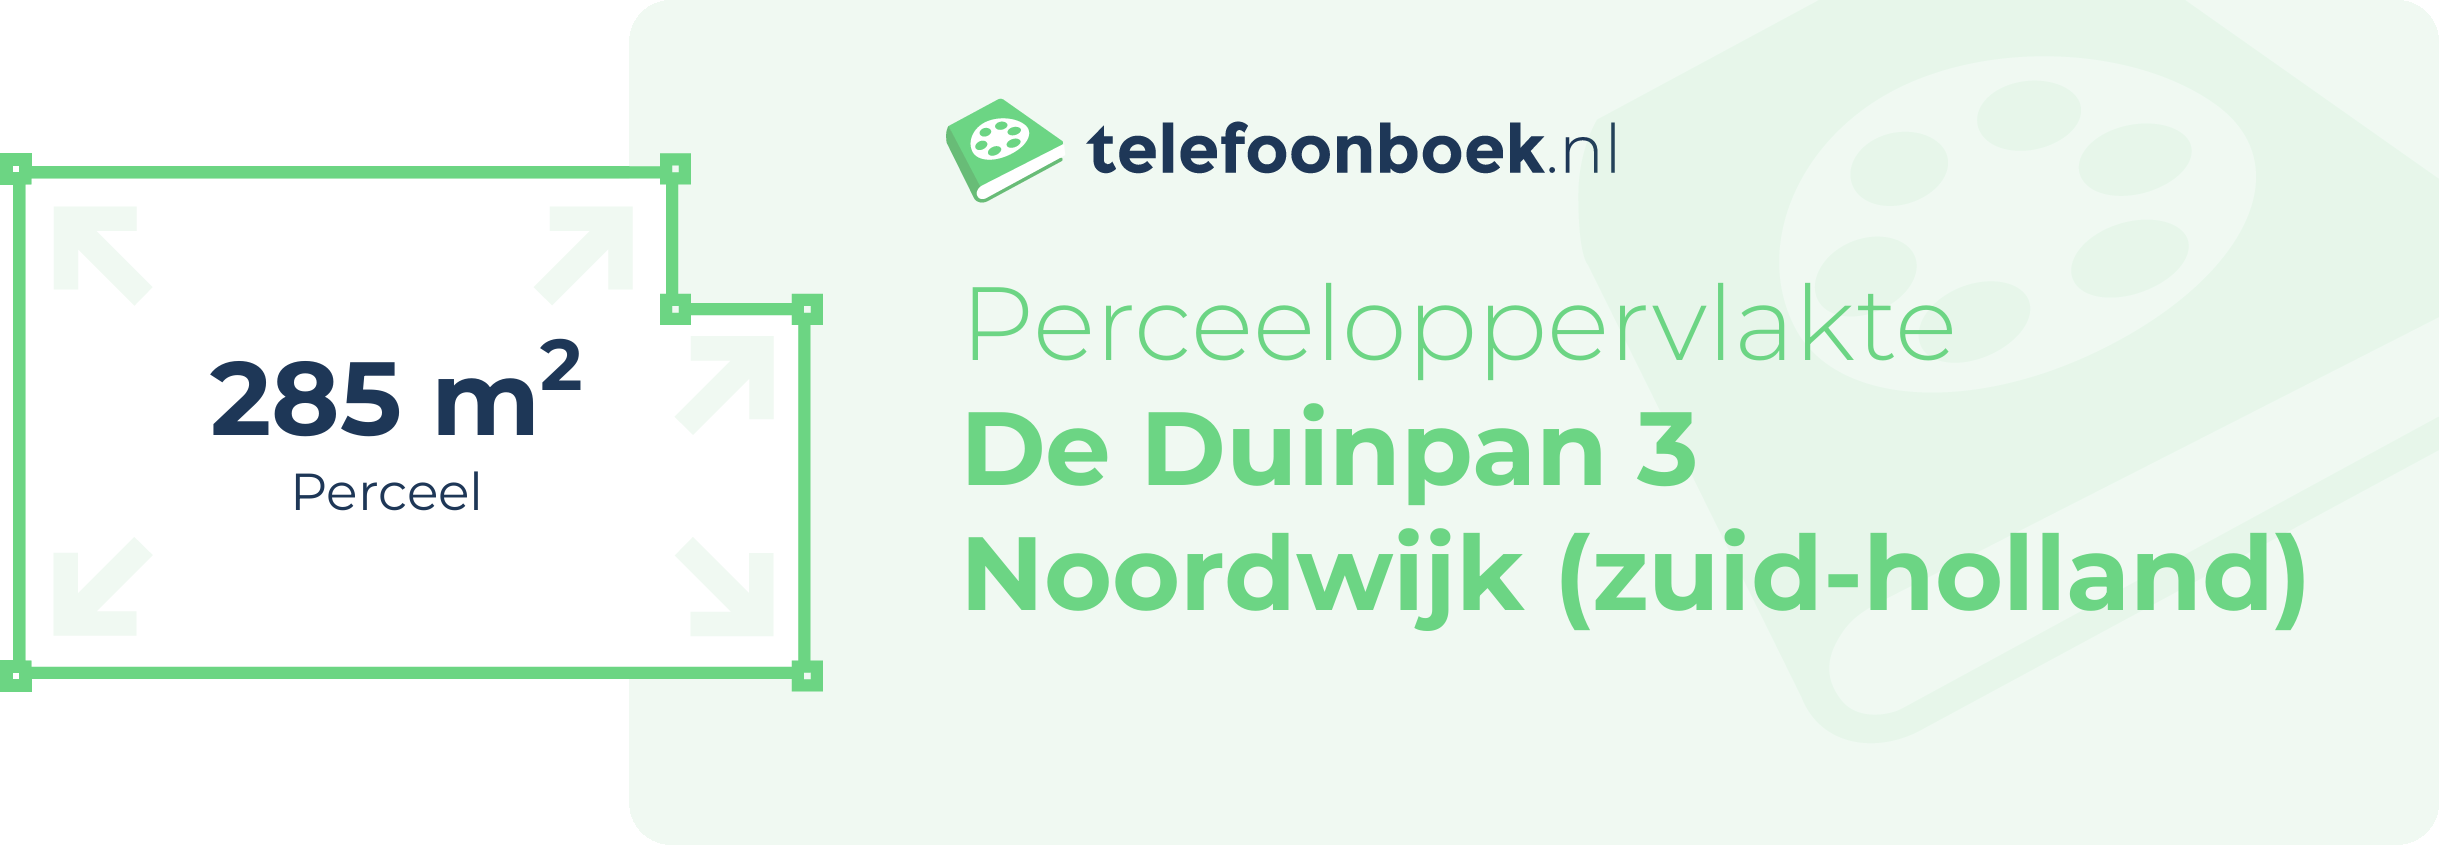 Perceeloppervlakte De Duinpan 3 Noordwijk (Zuid-Holland)